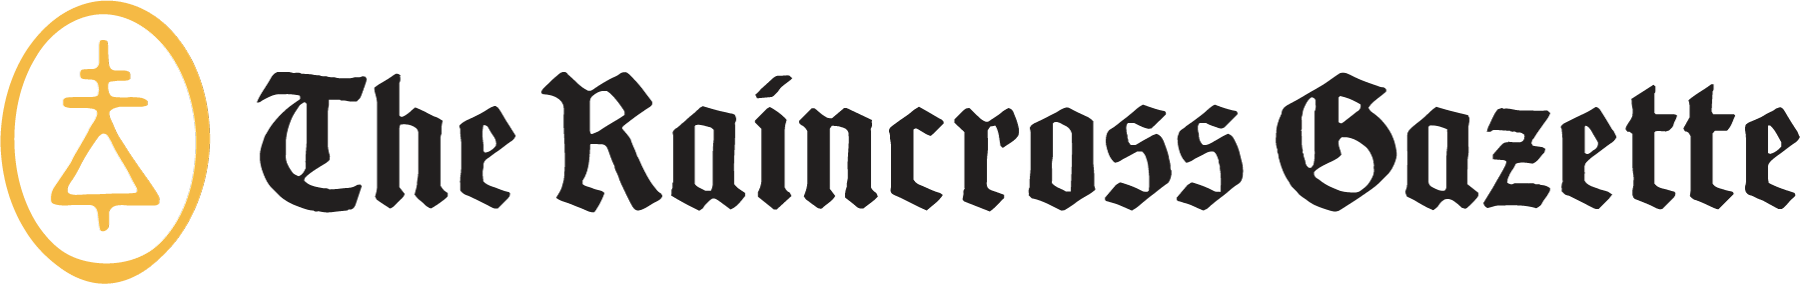 Raincross Gazette Logo